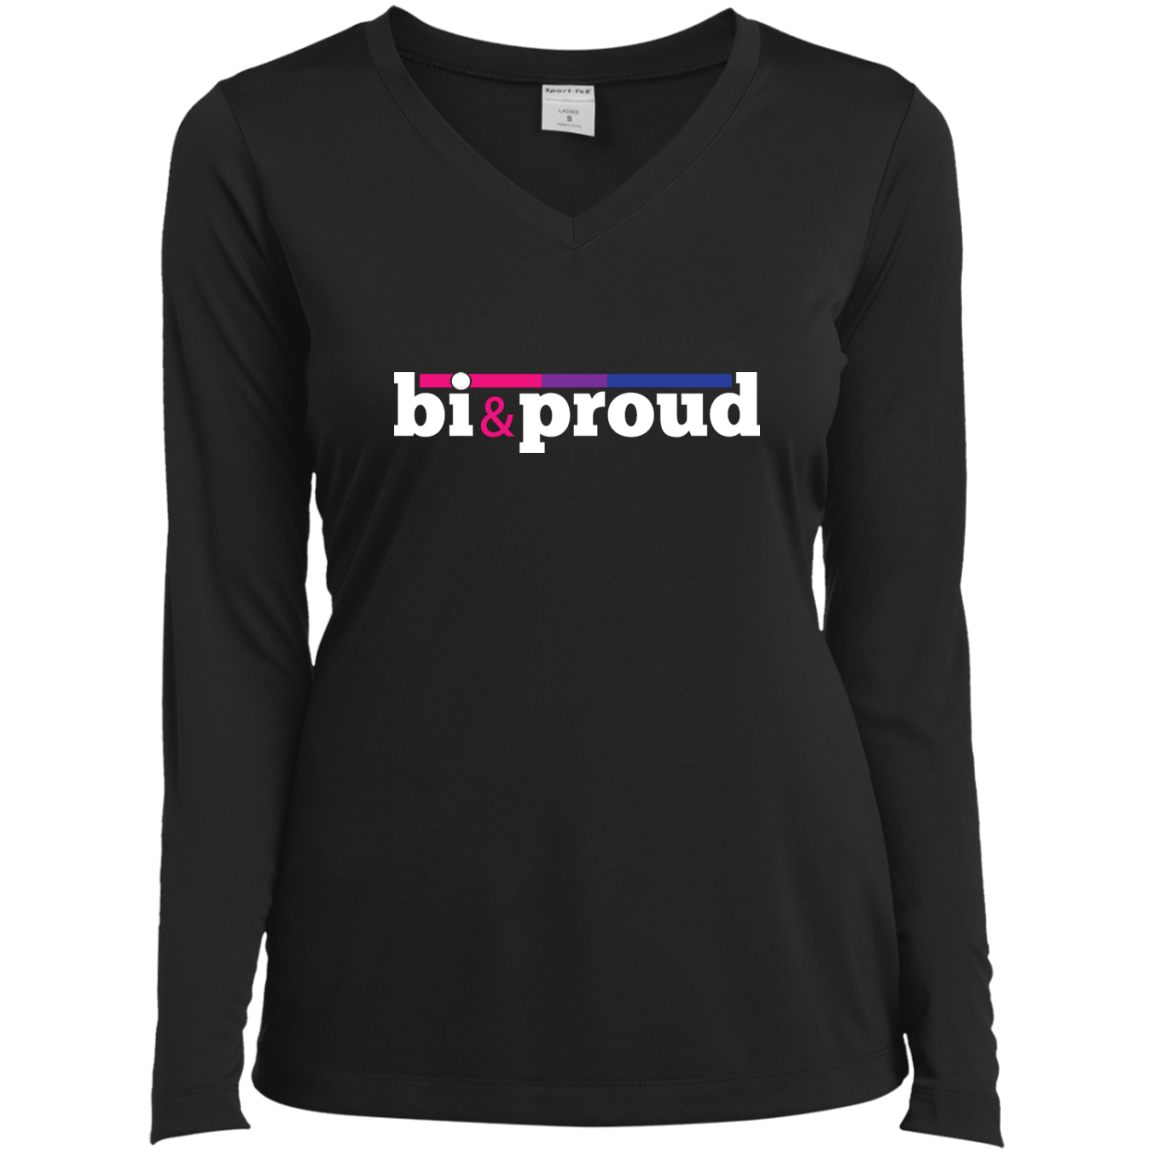 bi & proud LGBTQ+ identity apparel